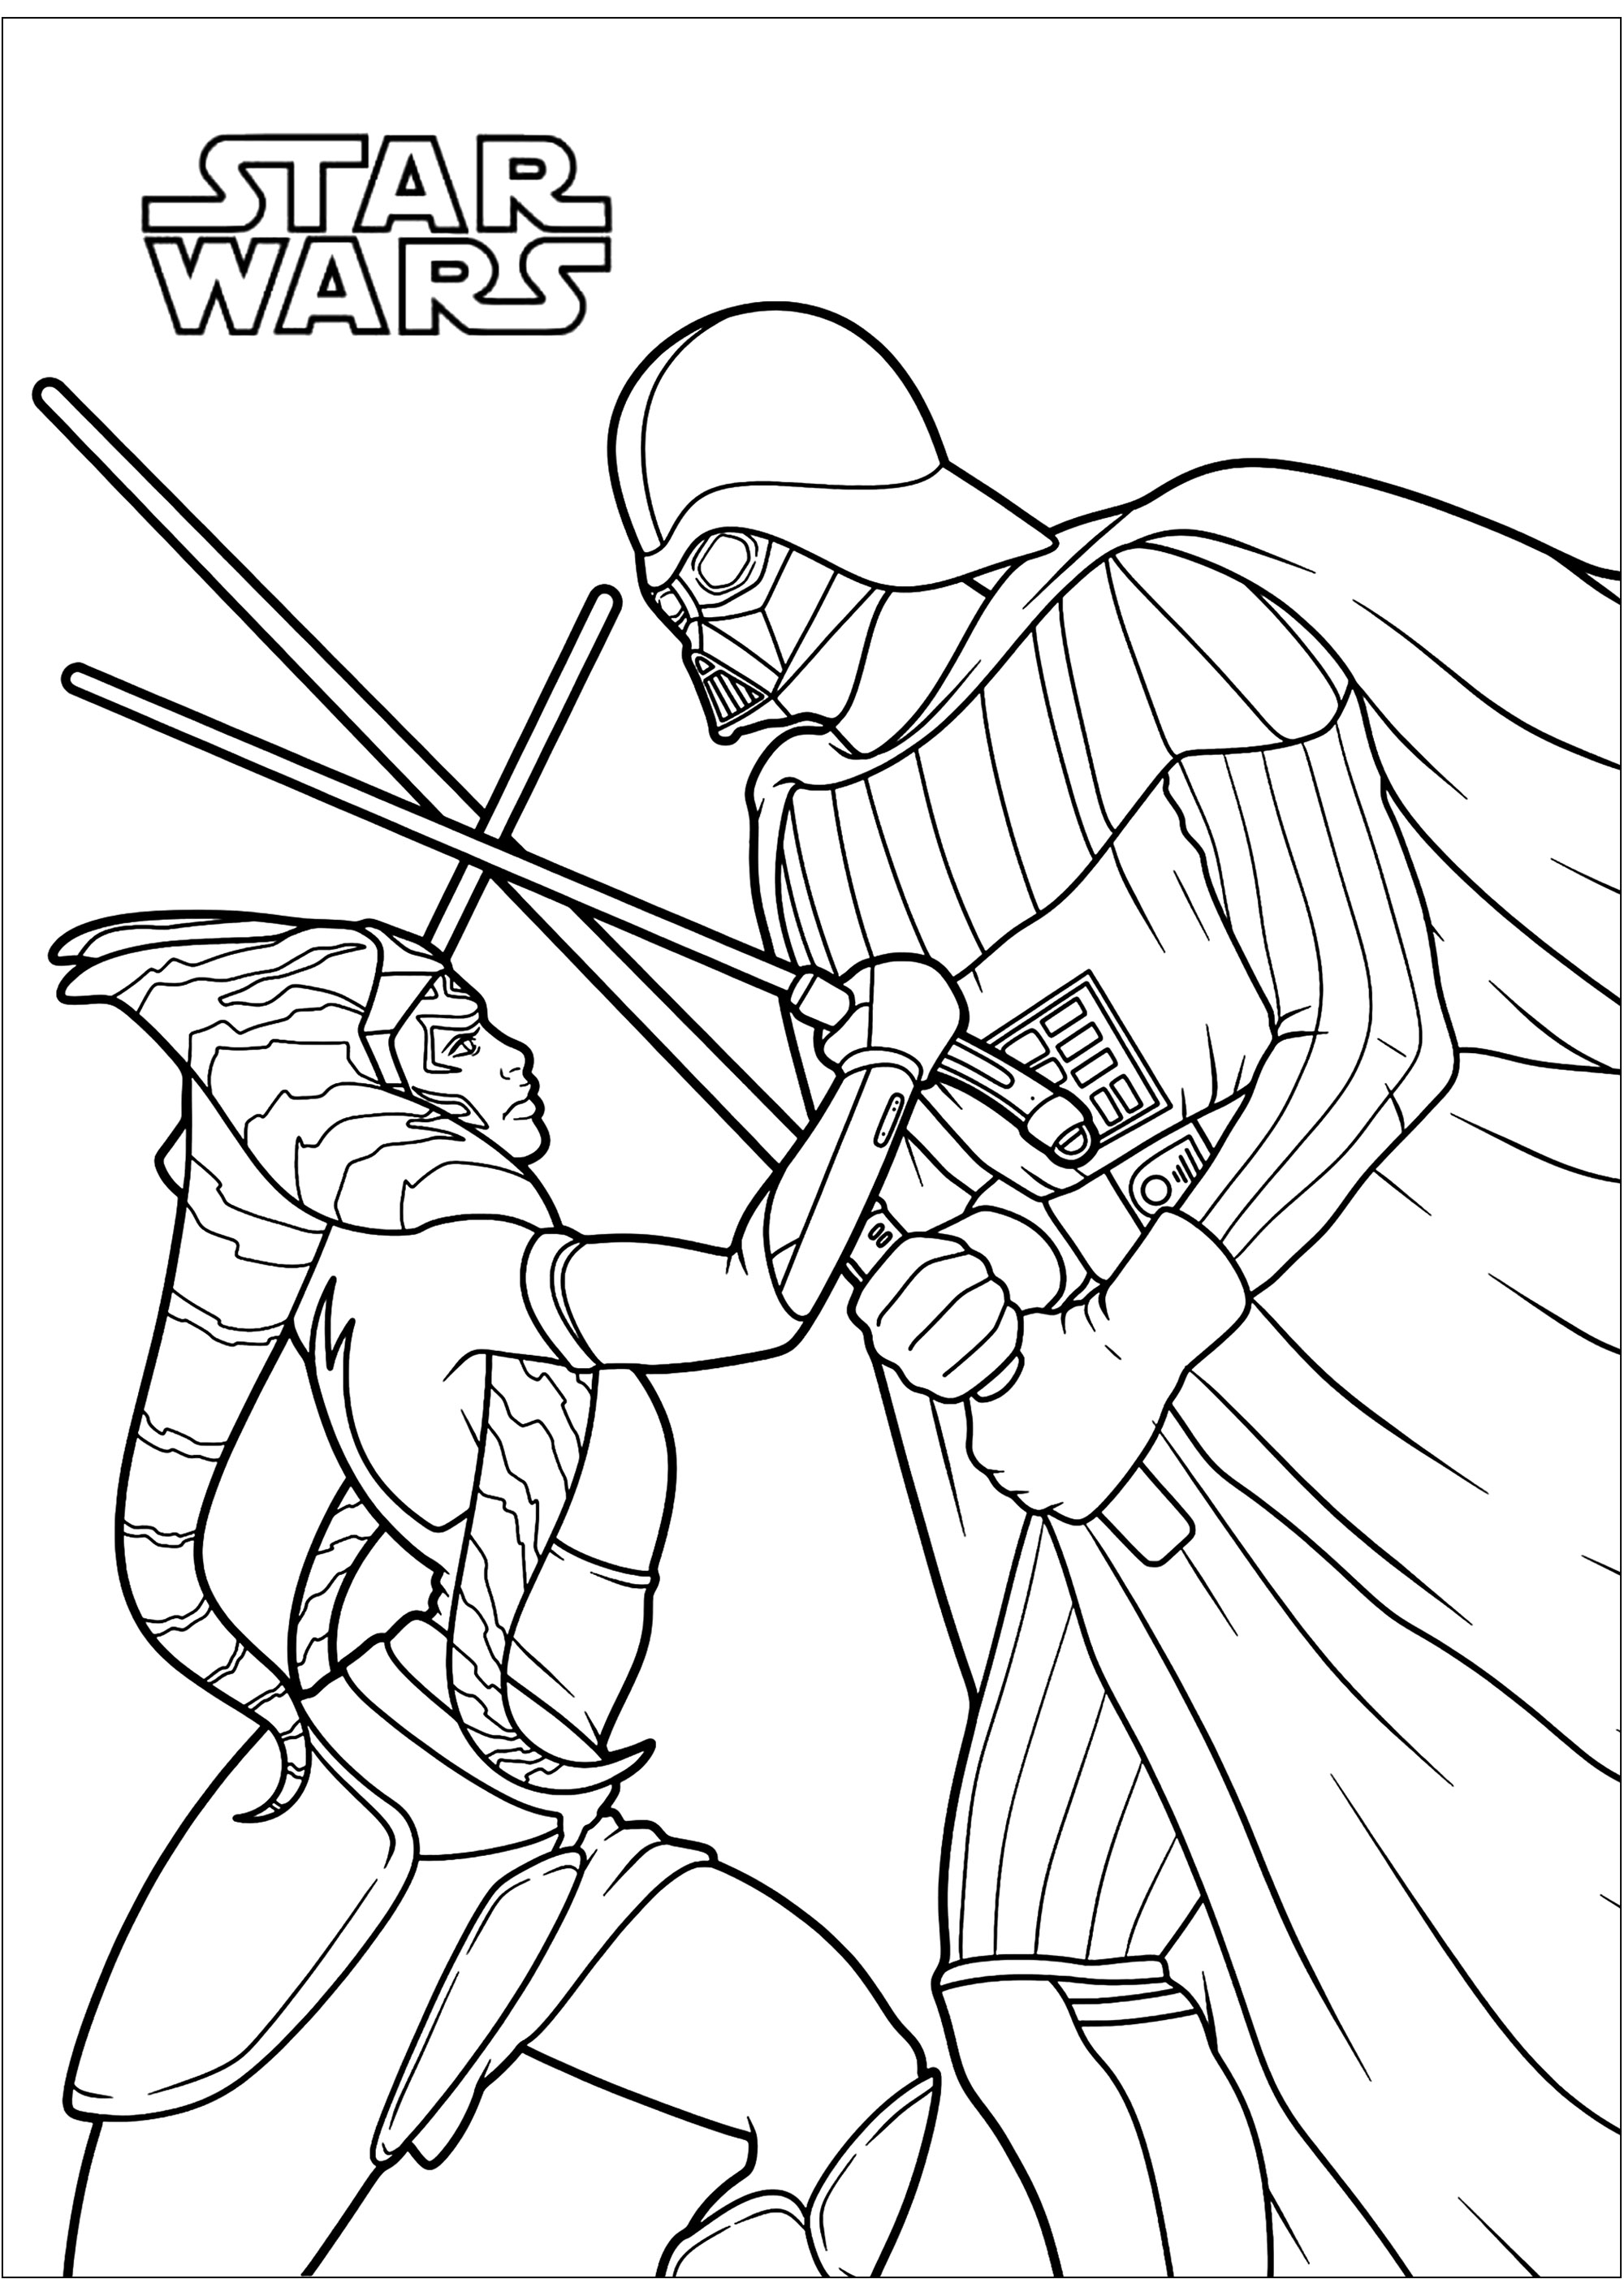 Ahsoka Tano luta contra Darth Vader, nada mais nada menos do que o seu antigo mestre Jedi Anakin Skywalker. Originária do planeta Shili, Ahsoka Tano foi levada para Coruscant em criança para ser treinada como Jedi. No início da Guerra dos Clones, Ahsoka tornou-se aprendiz de Anakin Skywalker e participou em inúmeras batalhas.